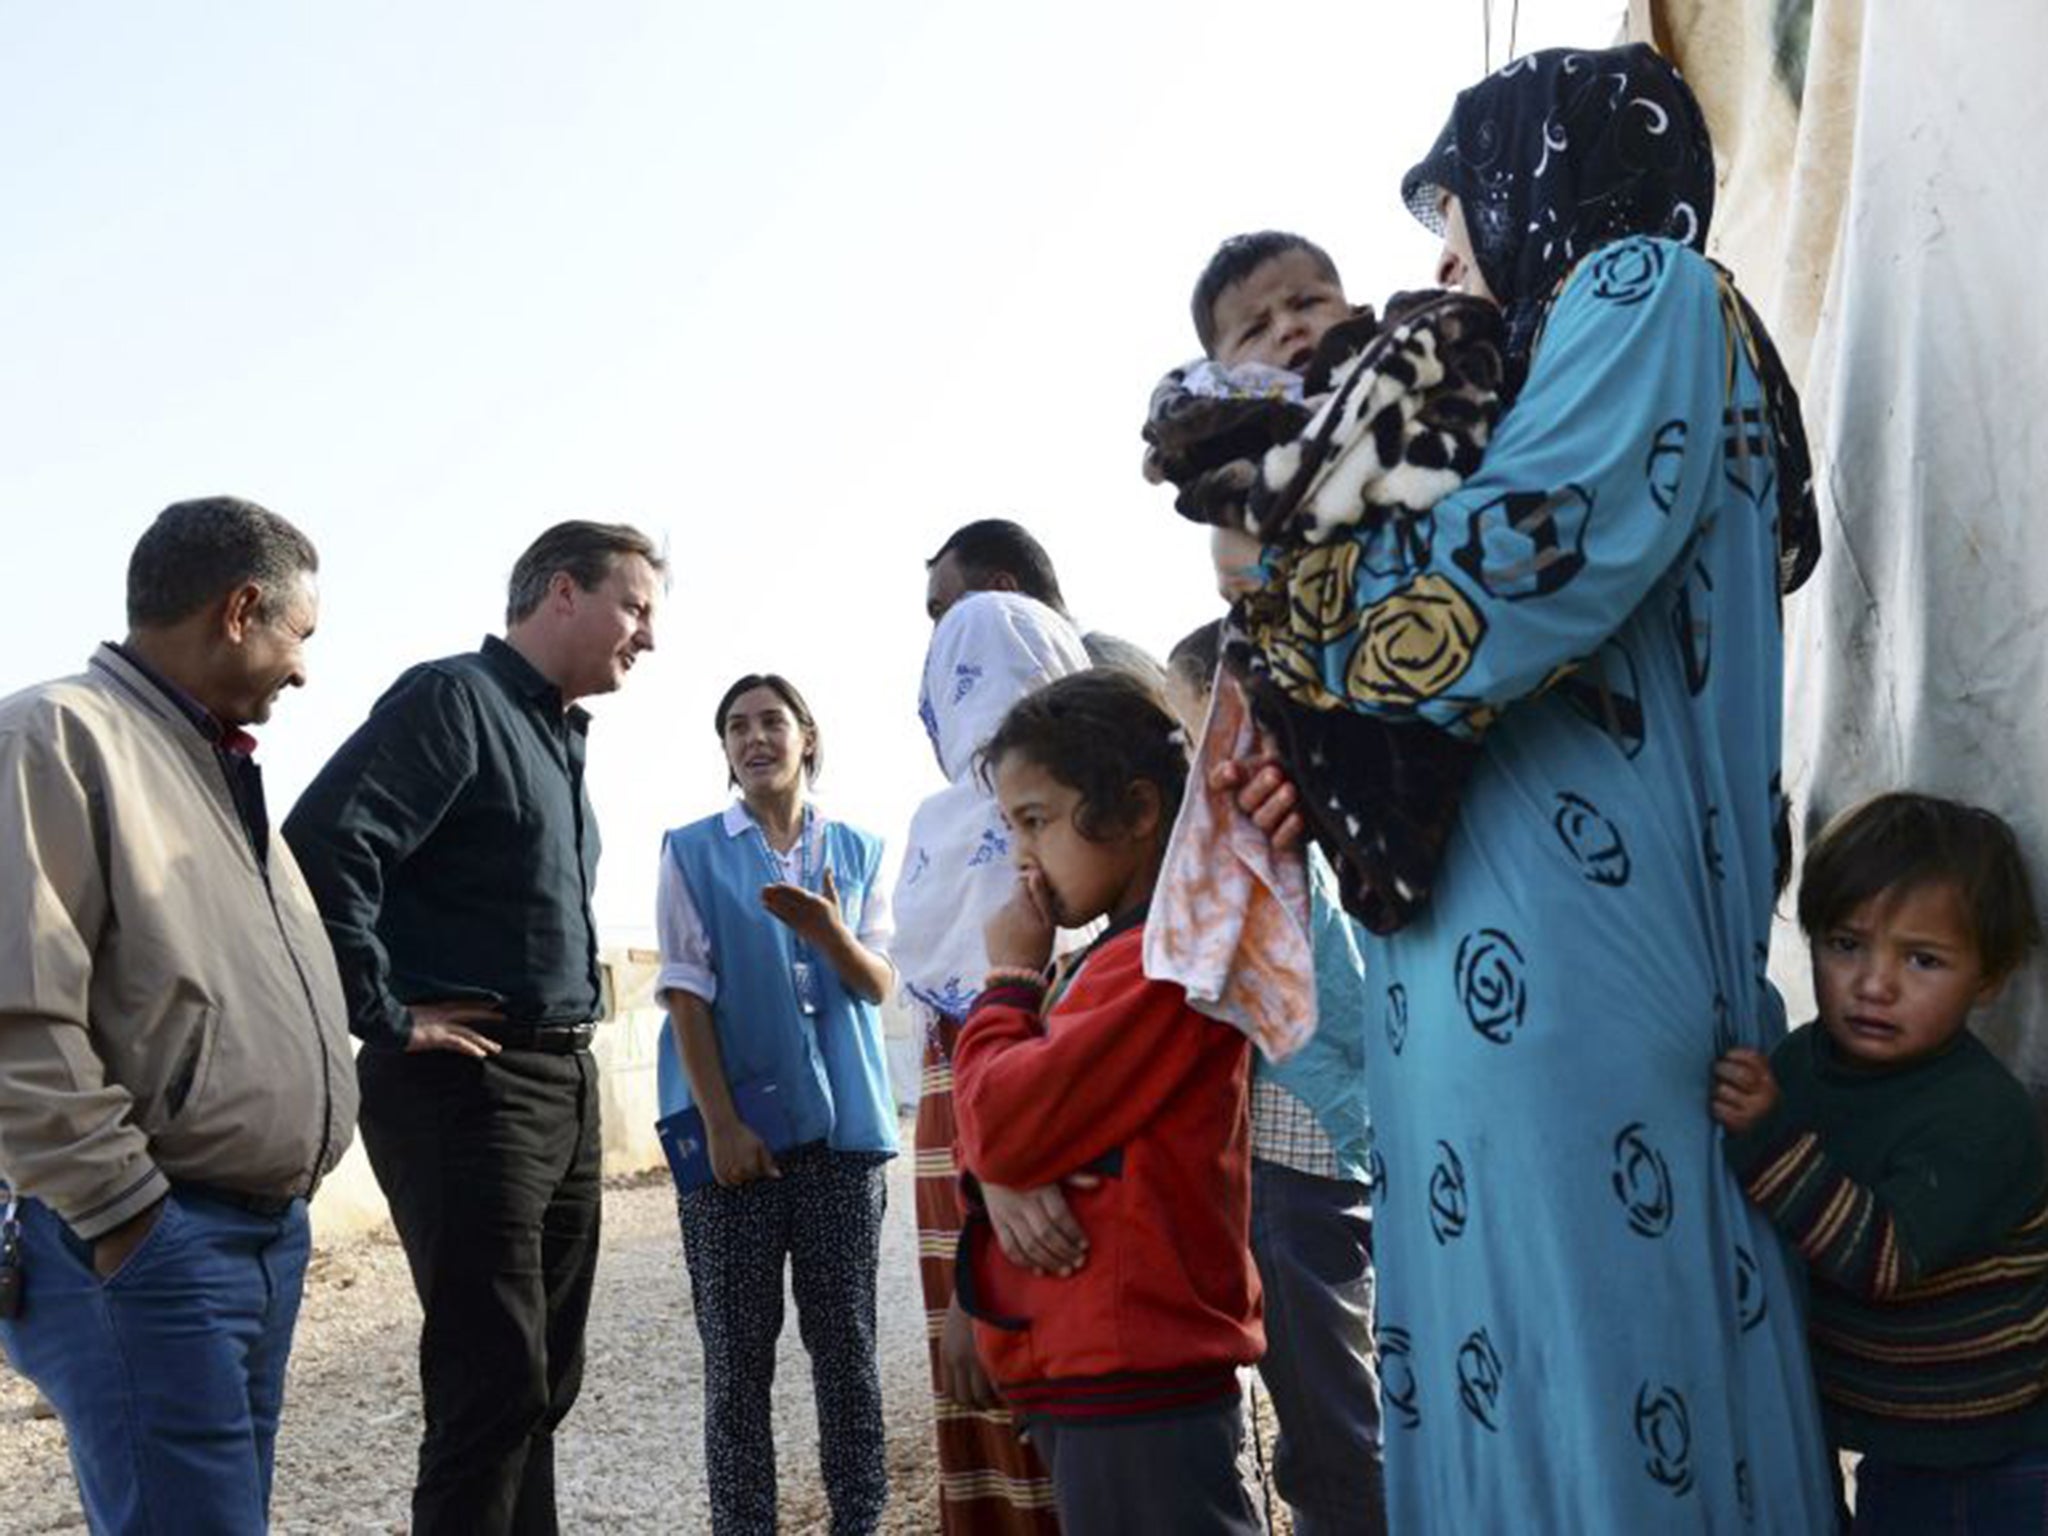 David Cameron meeting refugees in Jordan last week